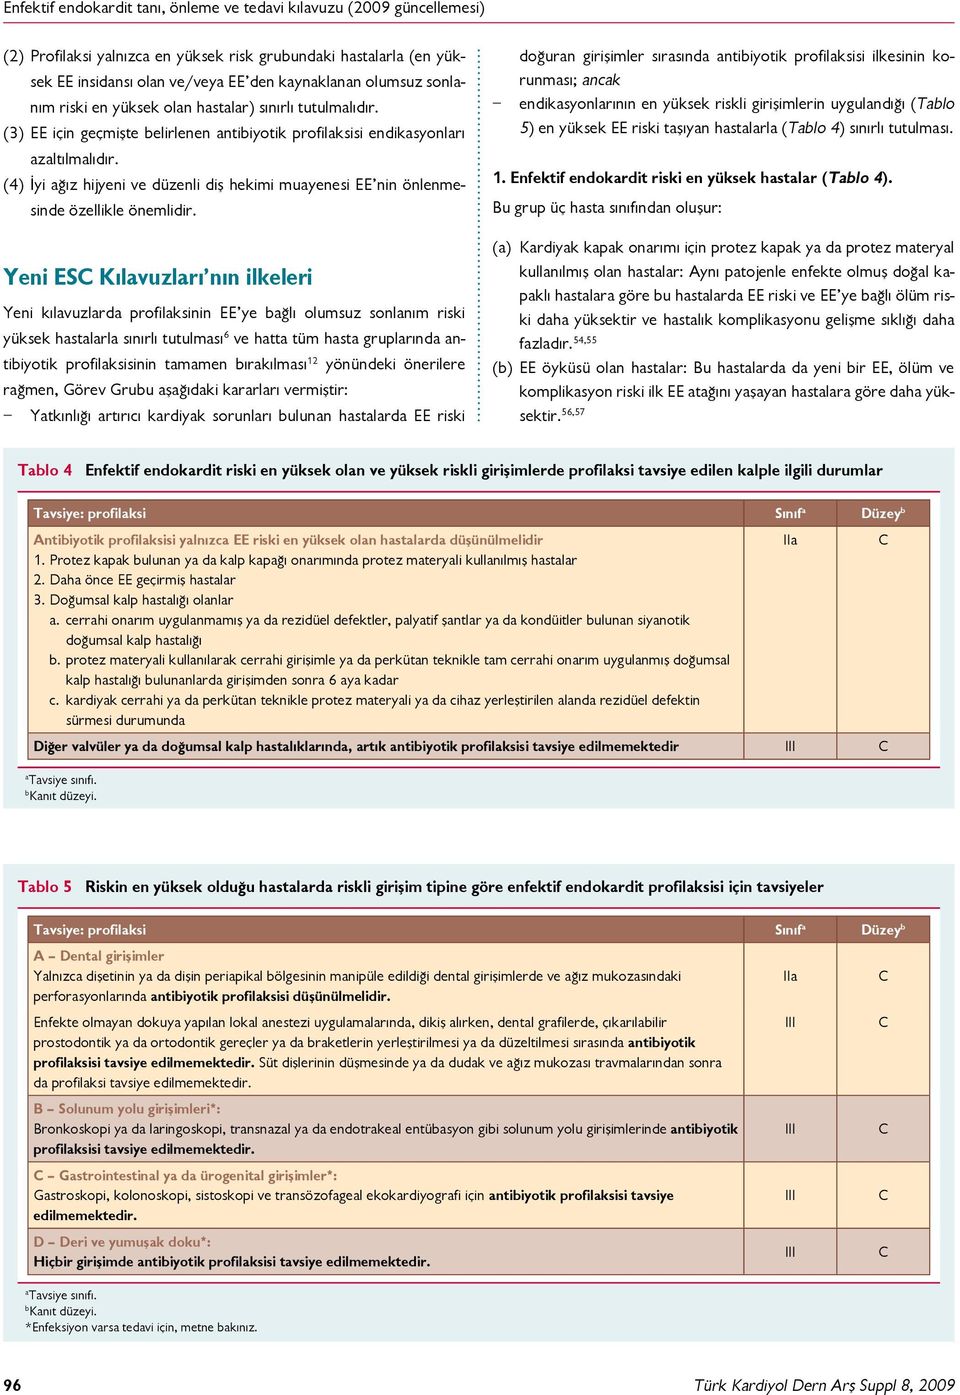 Yeni ESC Kılavuzları nın ilkeleri Yeni kılavuzlarda profilaksinin EE ye bağlı olumsuz sonlanım riski yüksek hastalarla sınırlı tutulması 6 ve hatta tüm hasta gruplarında antibiyotik profilaksisinin